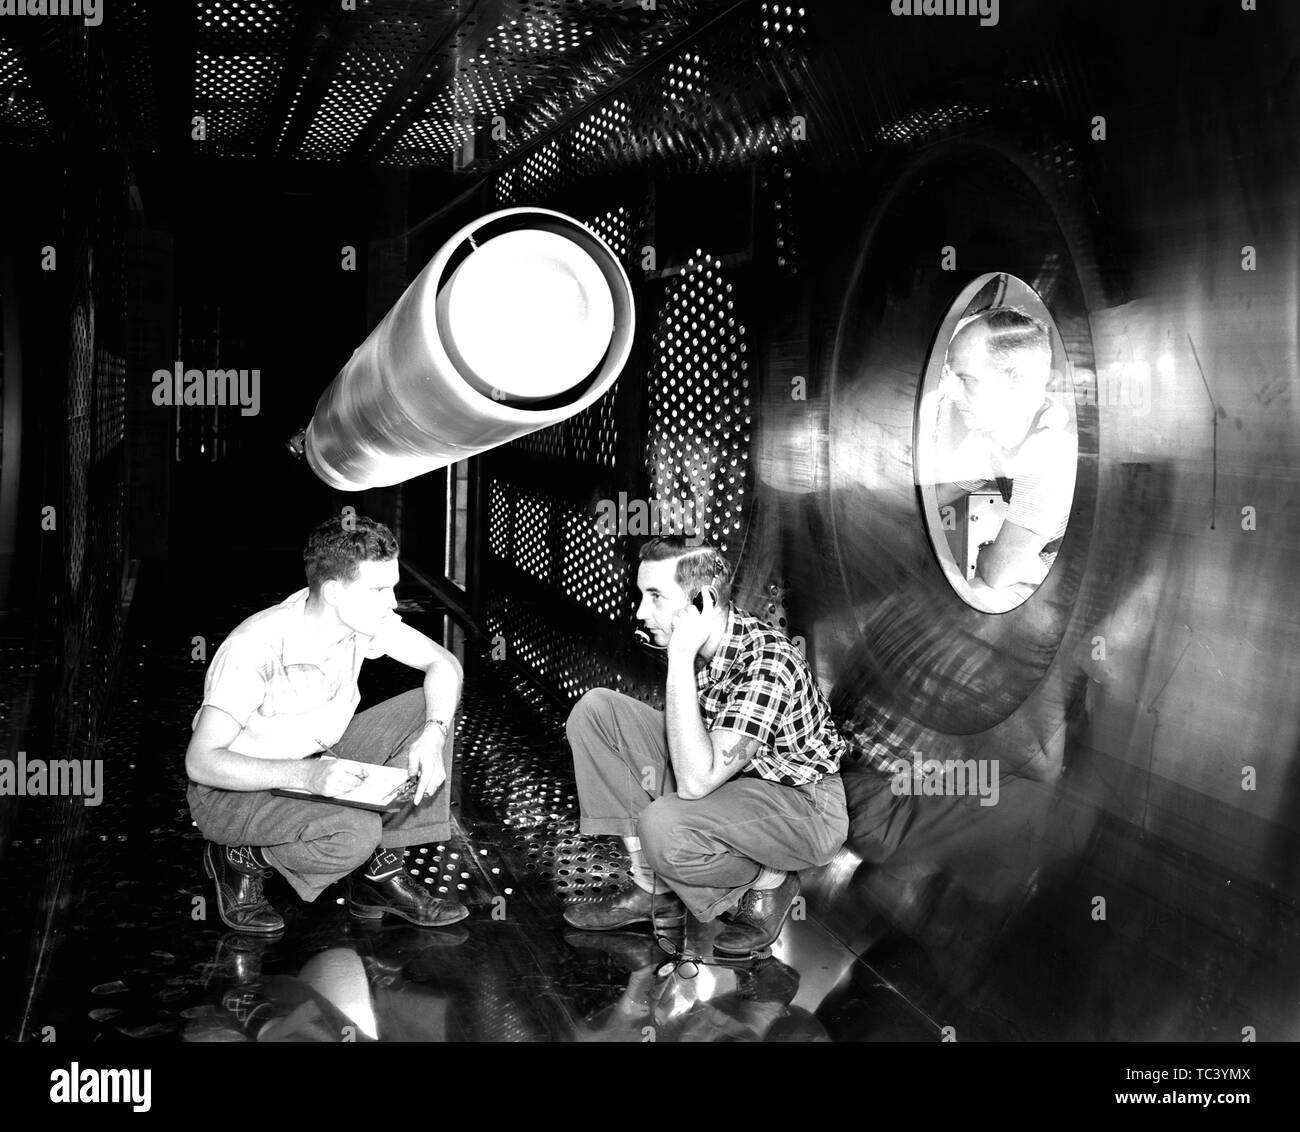 Gli ingegneri della NASA in supersonico di galleria del vento Test-Section al volo di Lewis Propulsion Laboratory, Cleveland, Ohio, 1957. Immagine cortesia Nazionale Aeronautica e Spaziale Administration (NASA). () Foto Stock